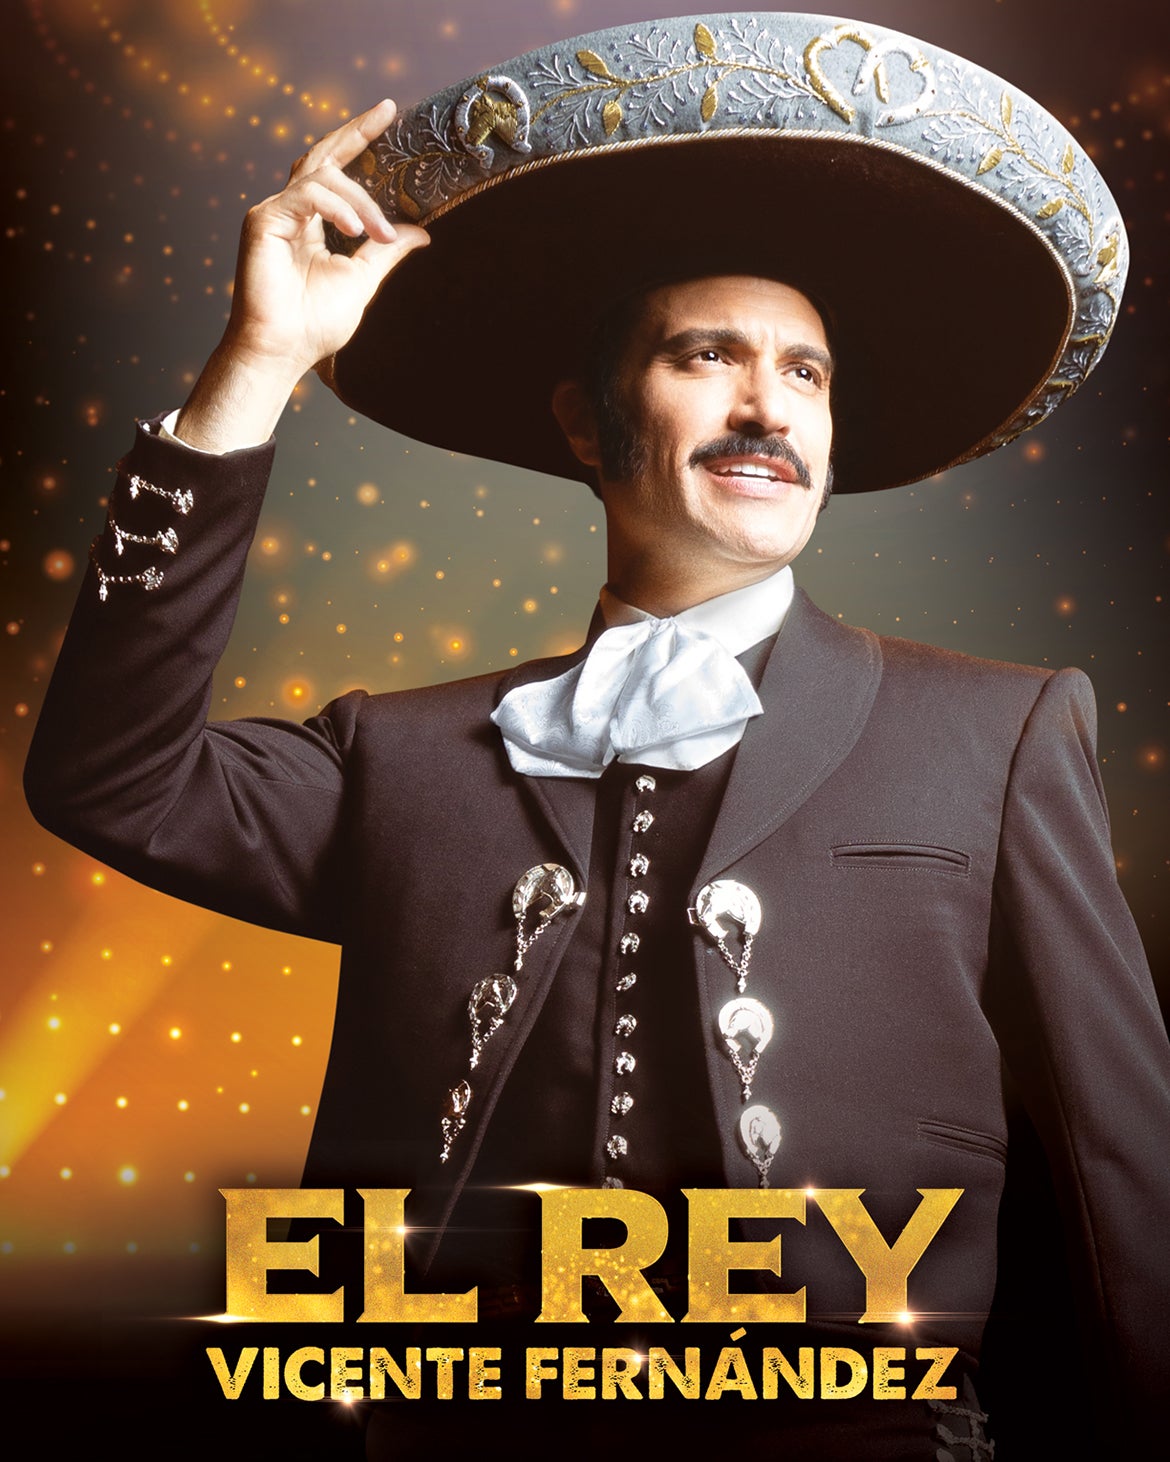 TV ratings for El Rey, Vicente Fernández in Brasil. Netflix TV series